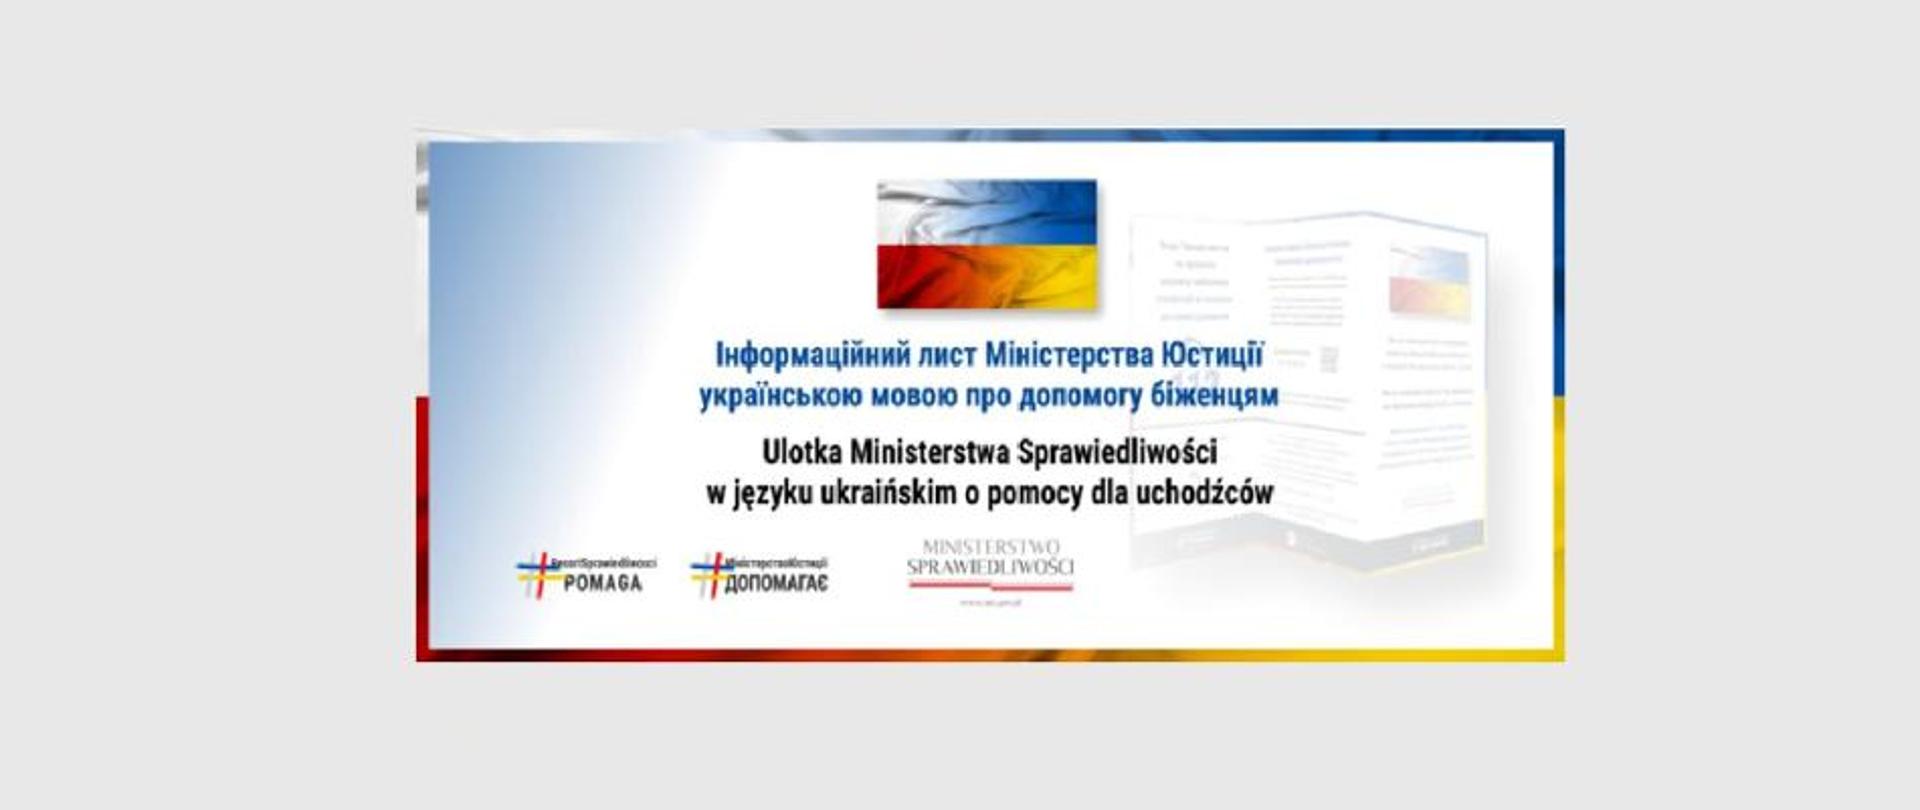 Baner ulotka Ministerstwa Sprawiedliwości w języku ukraińskim. W tle napisy w języku polskim i ukraińskim.